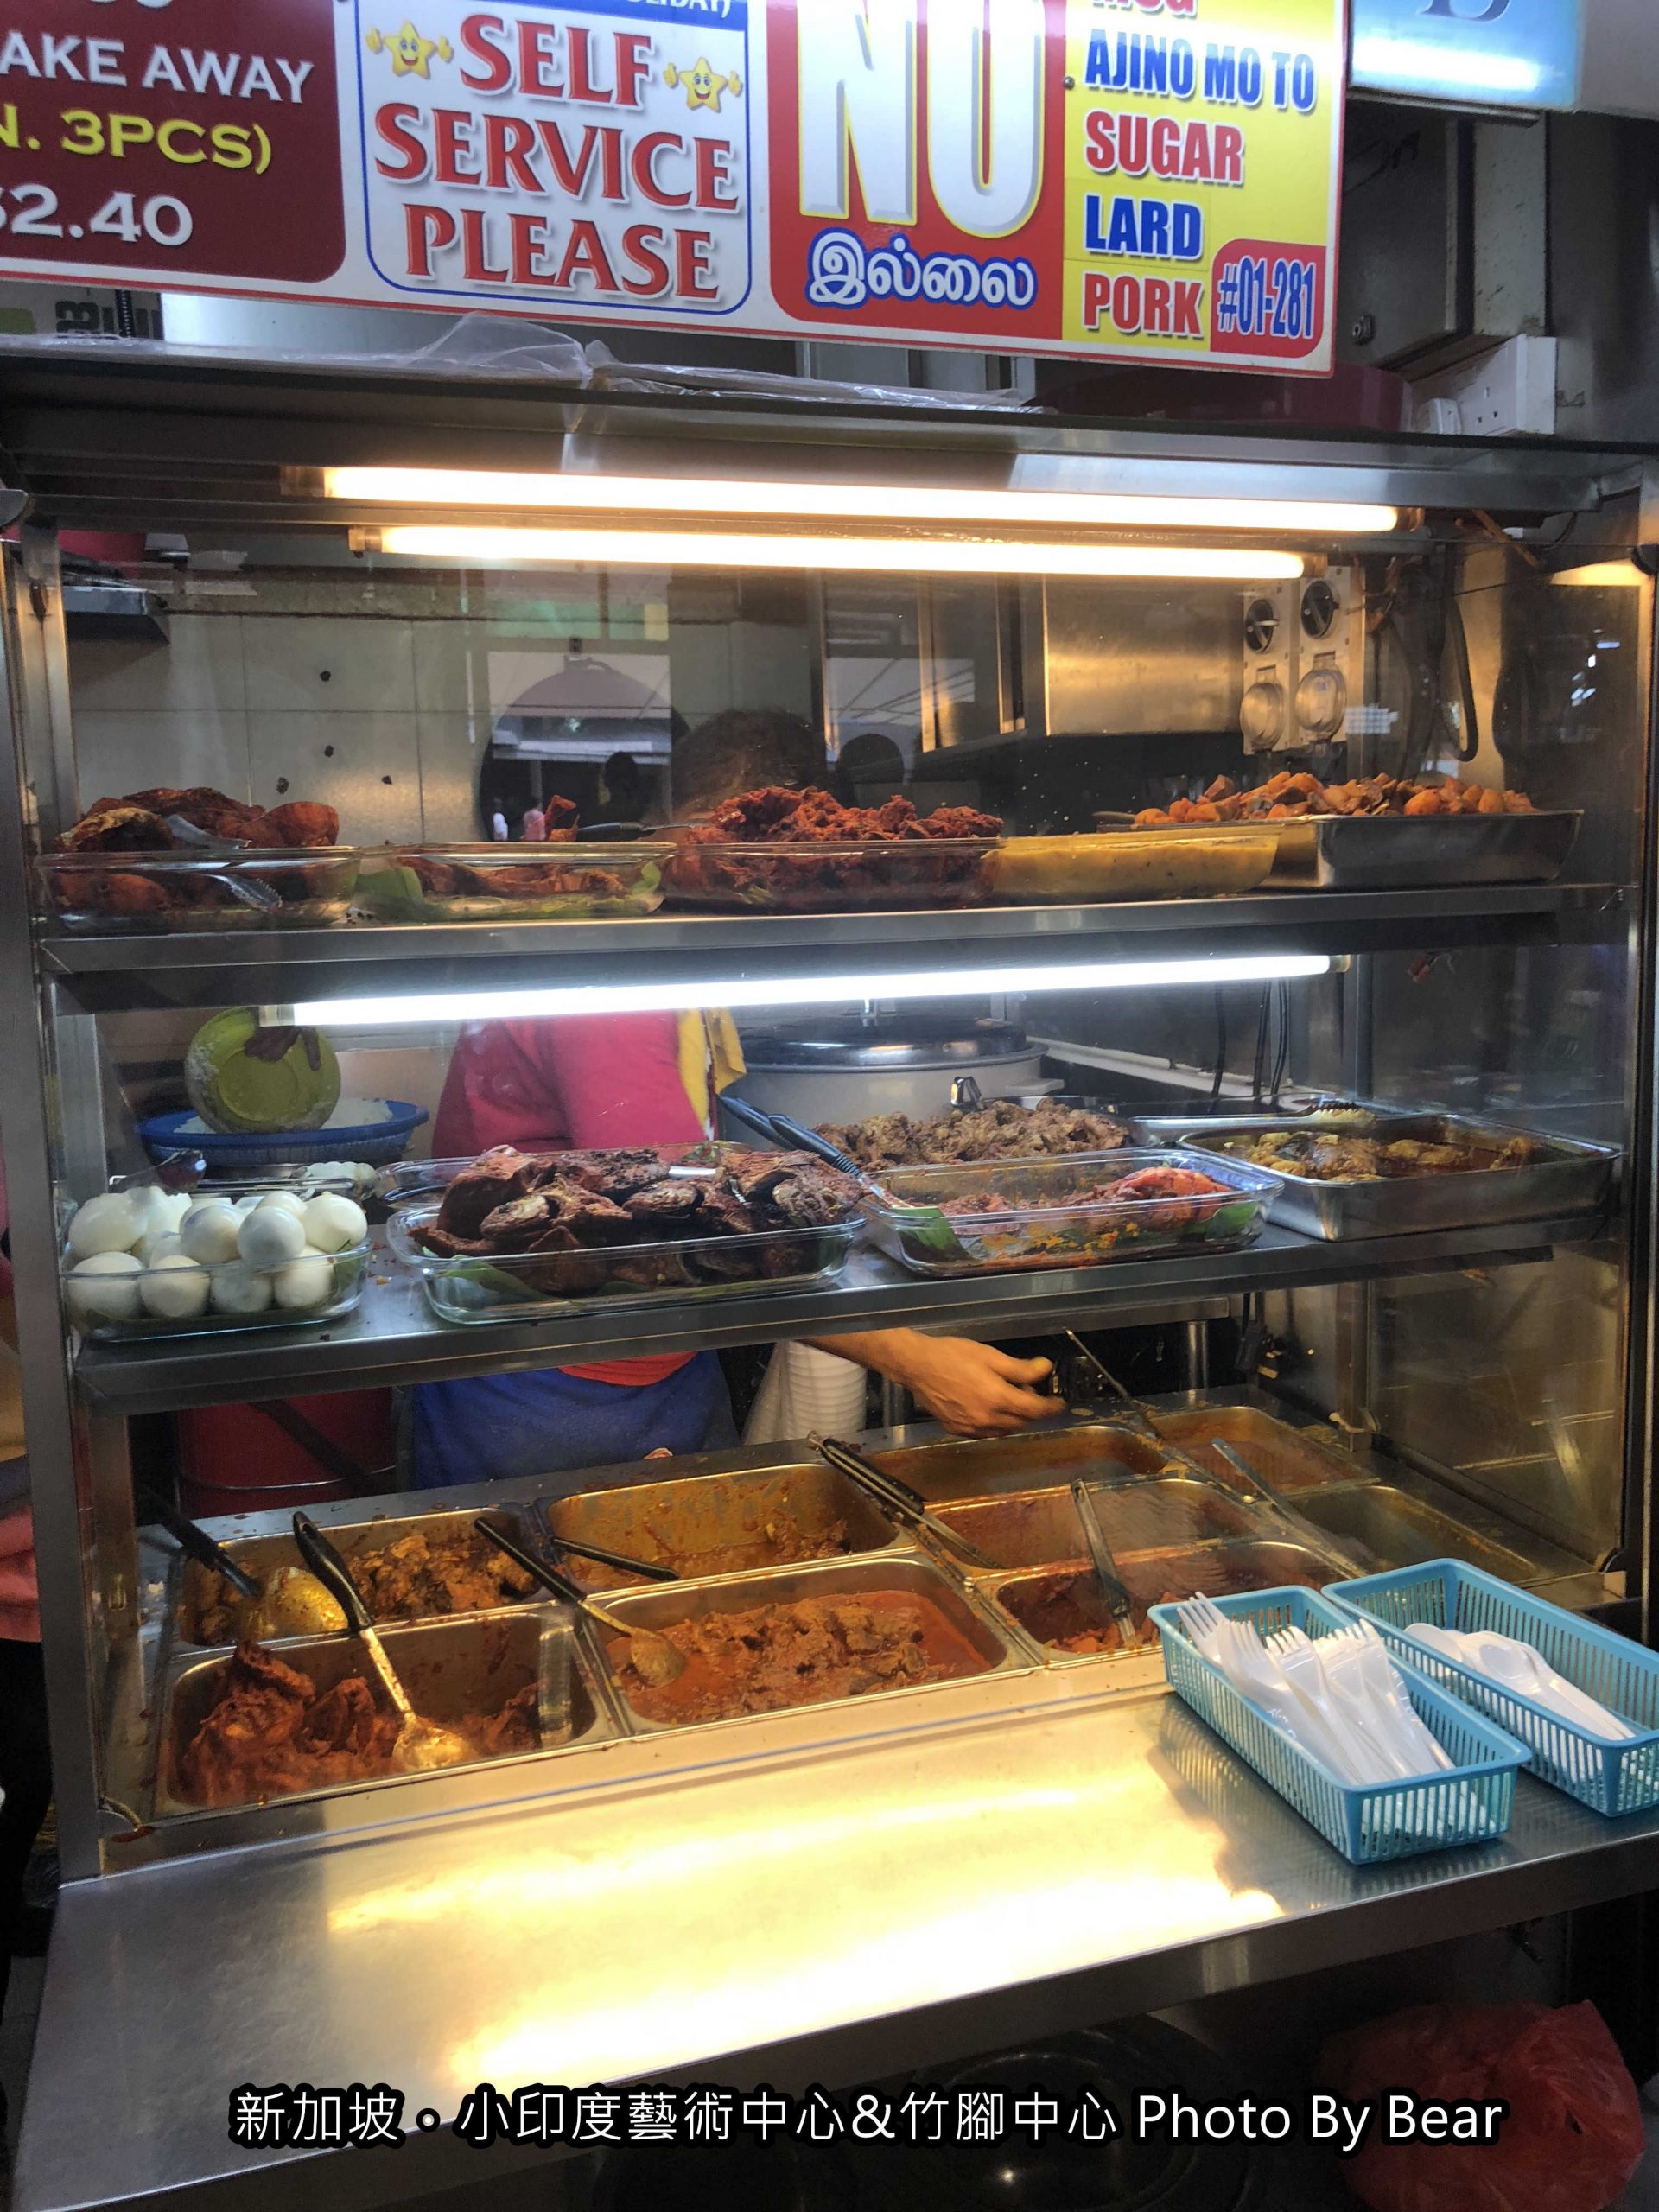 【2019新加坡自由行】「竹腳中心Tekka Centre．平價美味的印度料理匯集地（小印度區/AR RAHMAN  ROYAL PRATA/印度煎餅/Murtabak/Prata/印度香飯）」